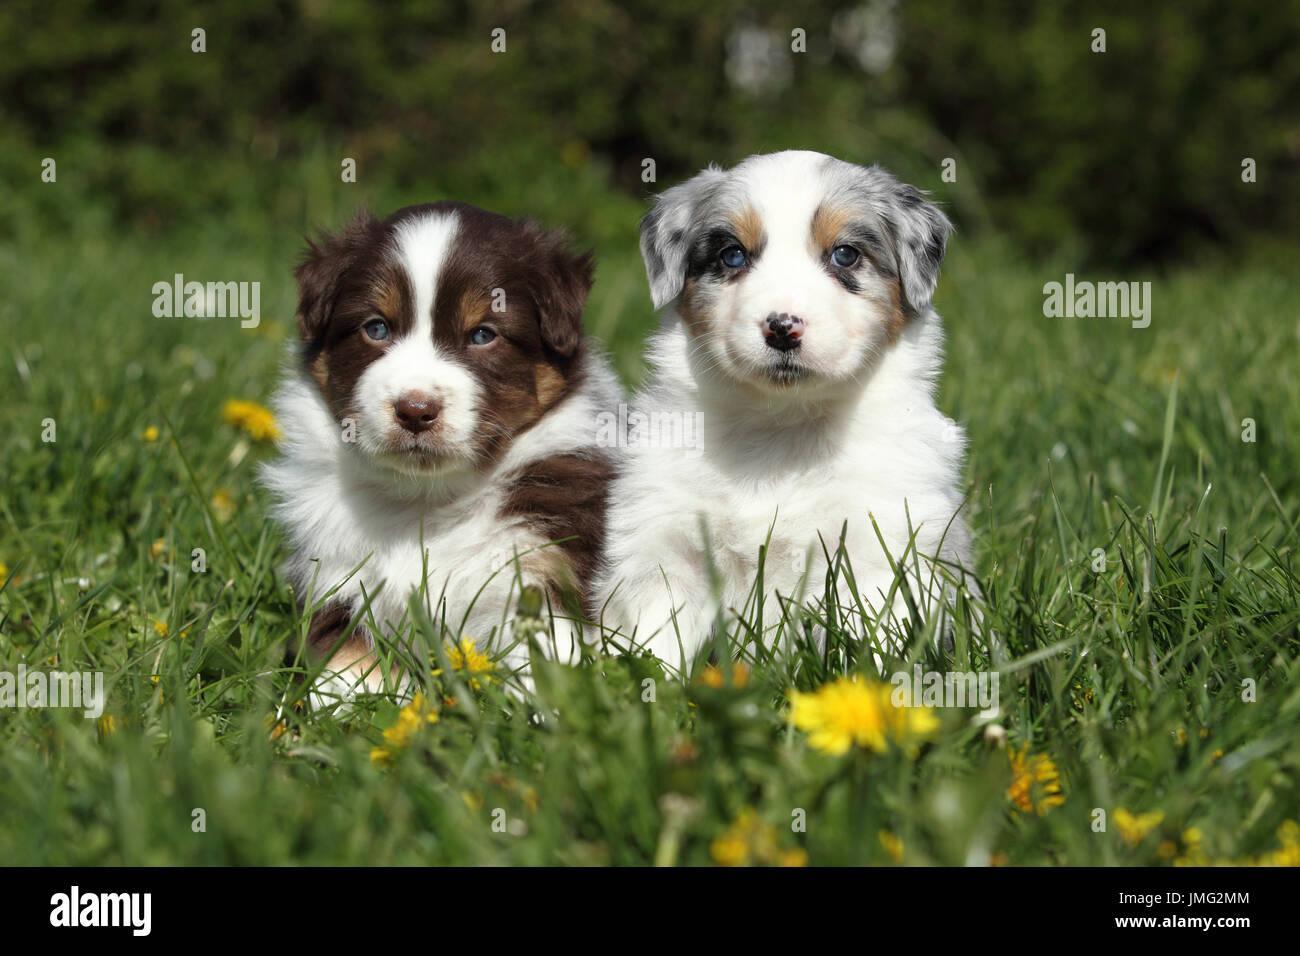 Berger Australien. Deux chiots (5 semaines) assis dans l'herbe. Allemagne Banque D'Images